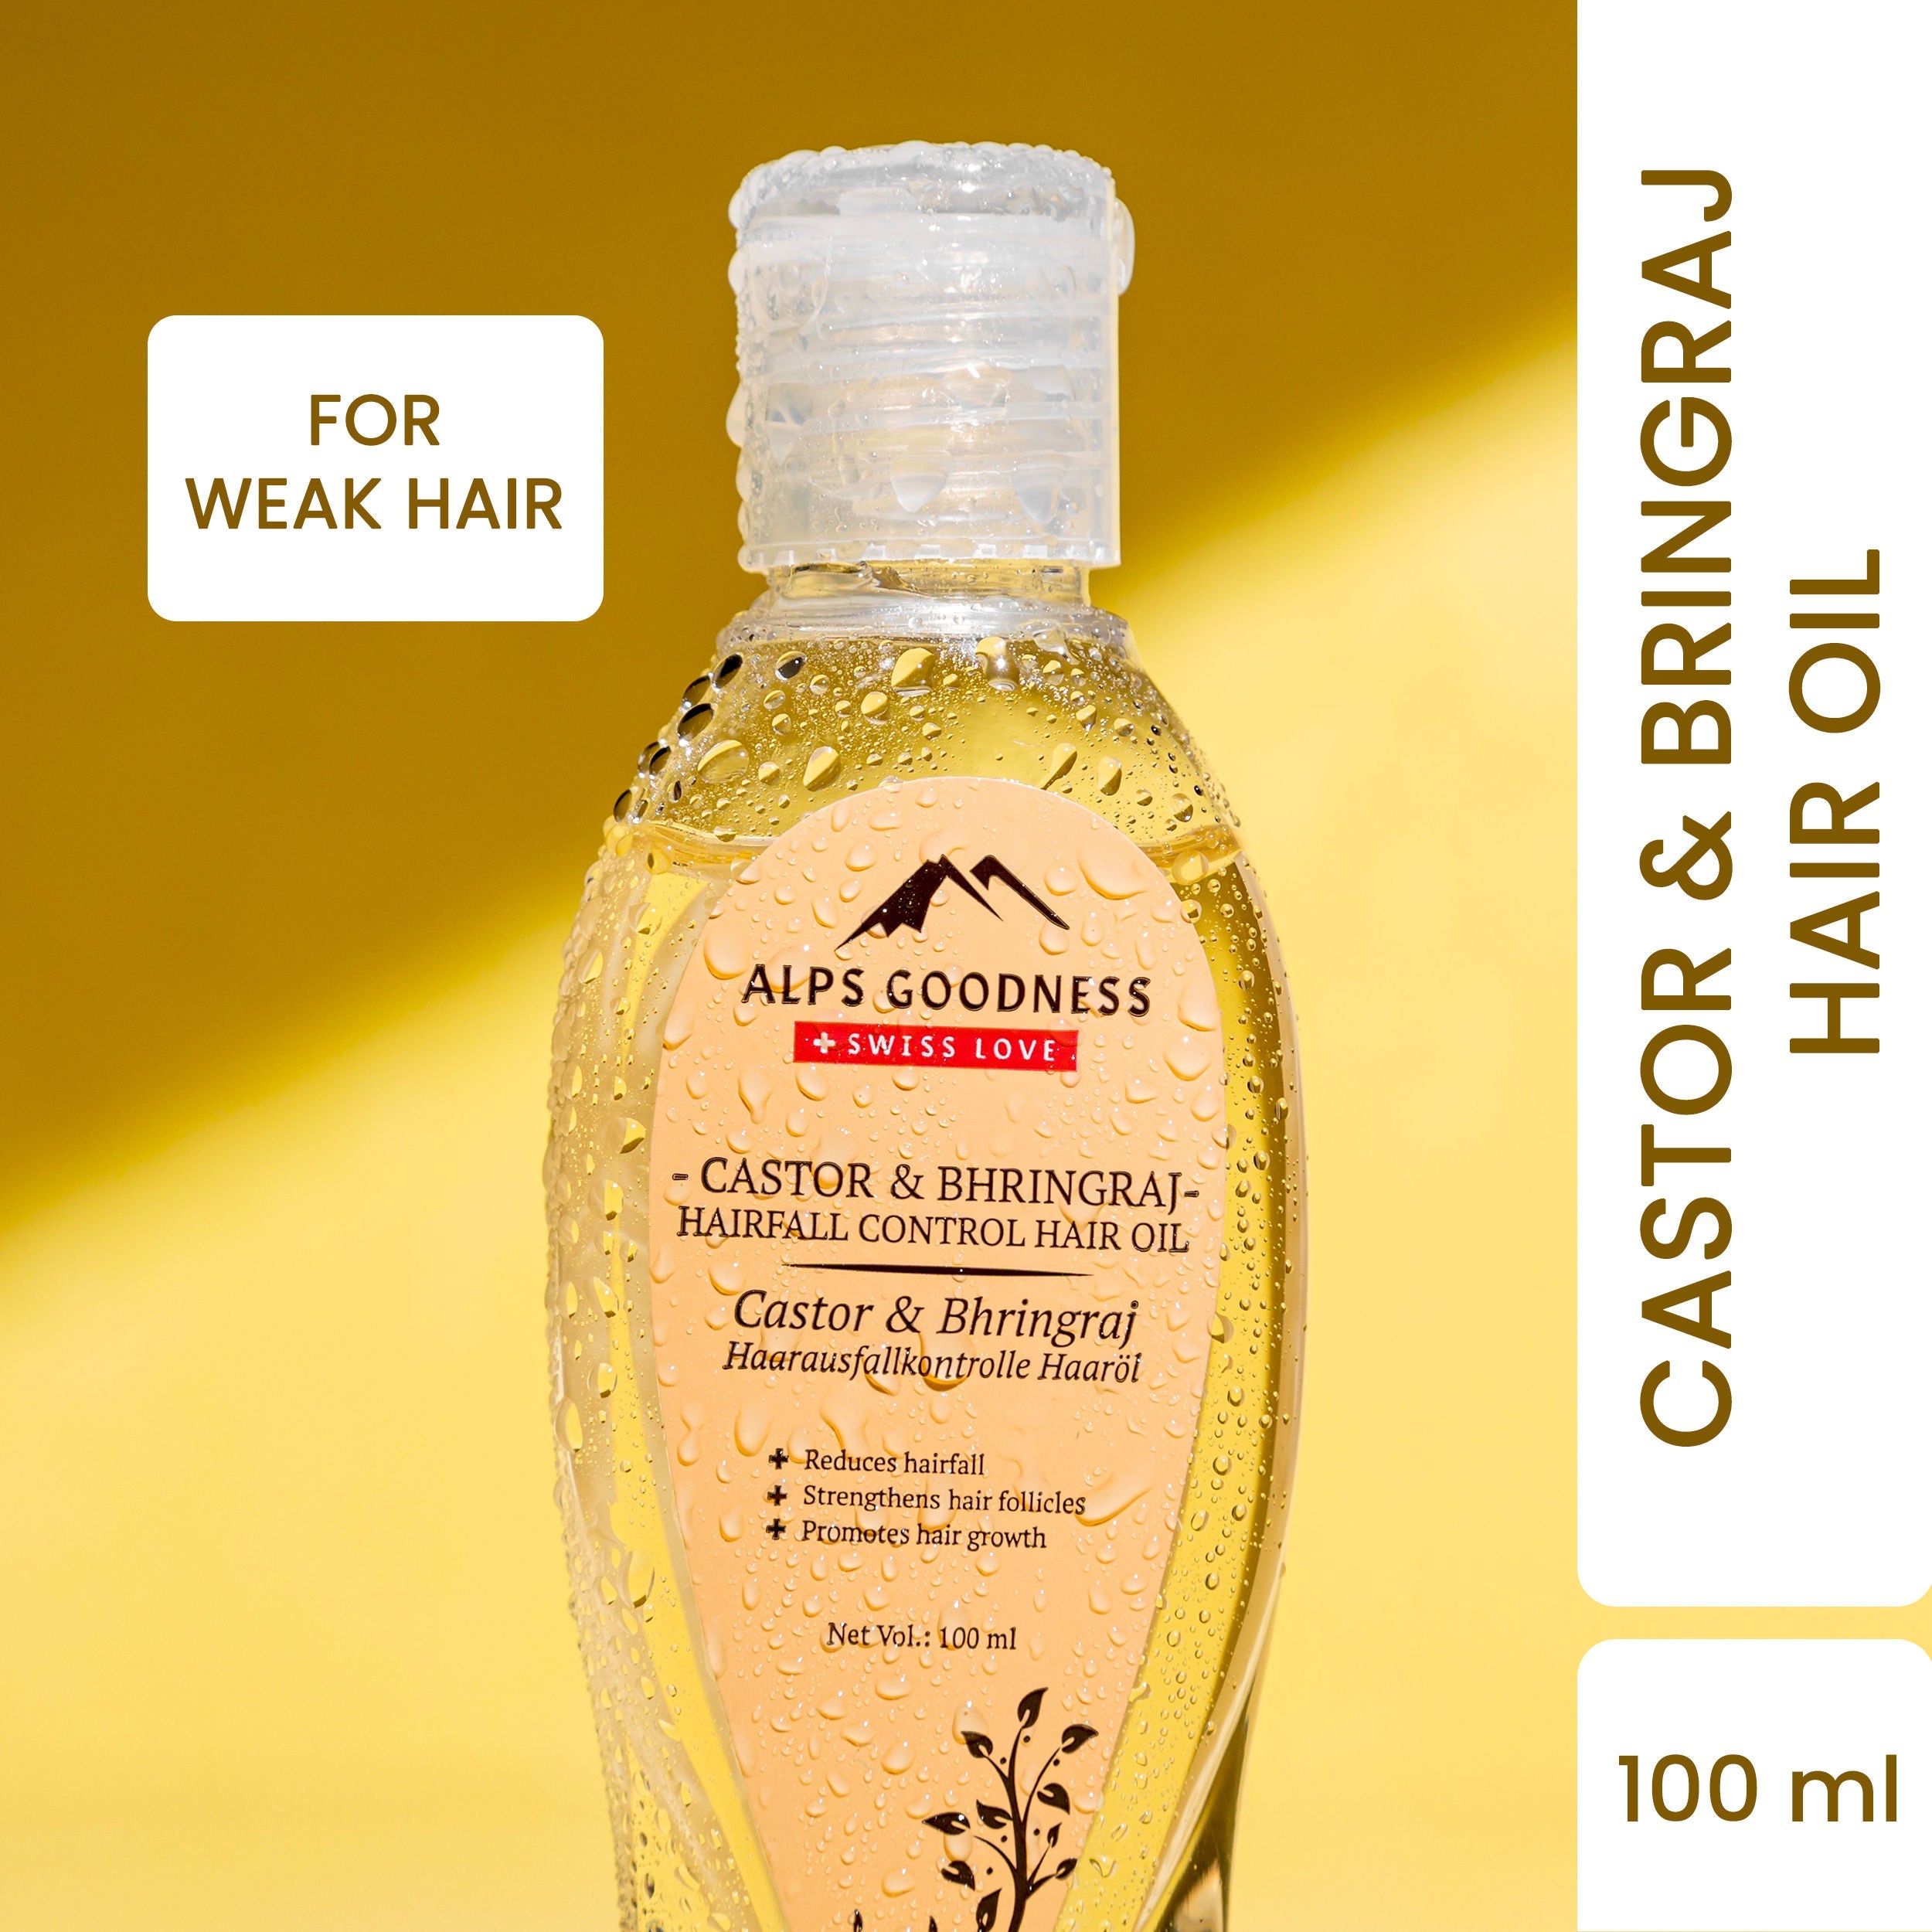 Alps Goodness Castor & Bhringraj Hairfall Control Hair Oil - 100 ml